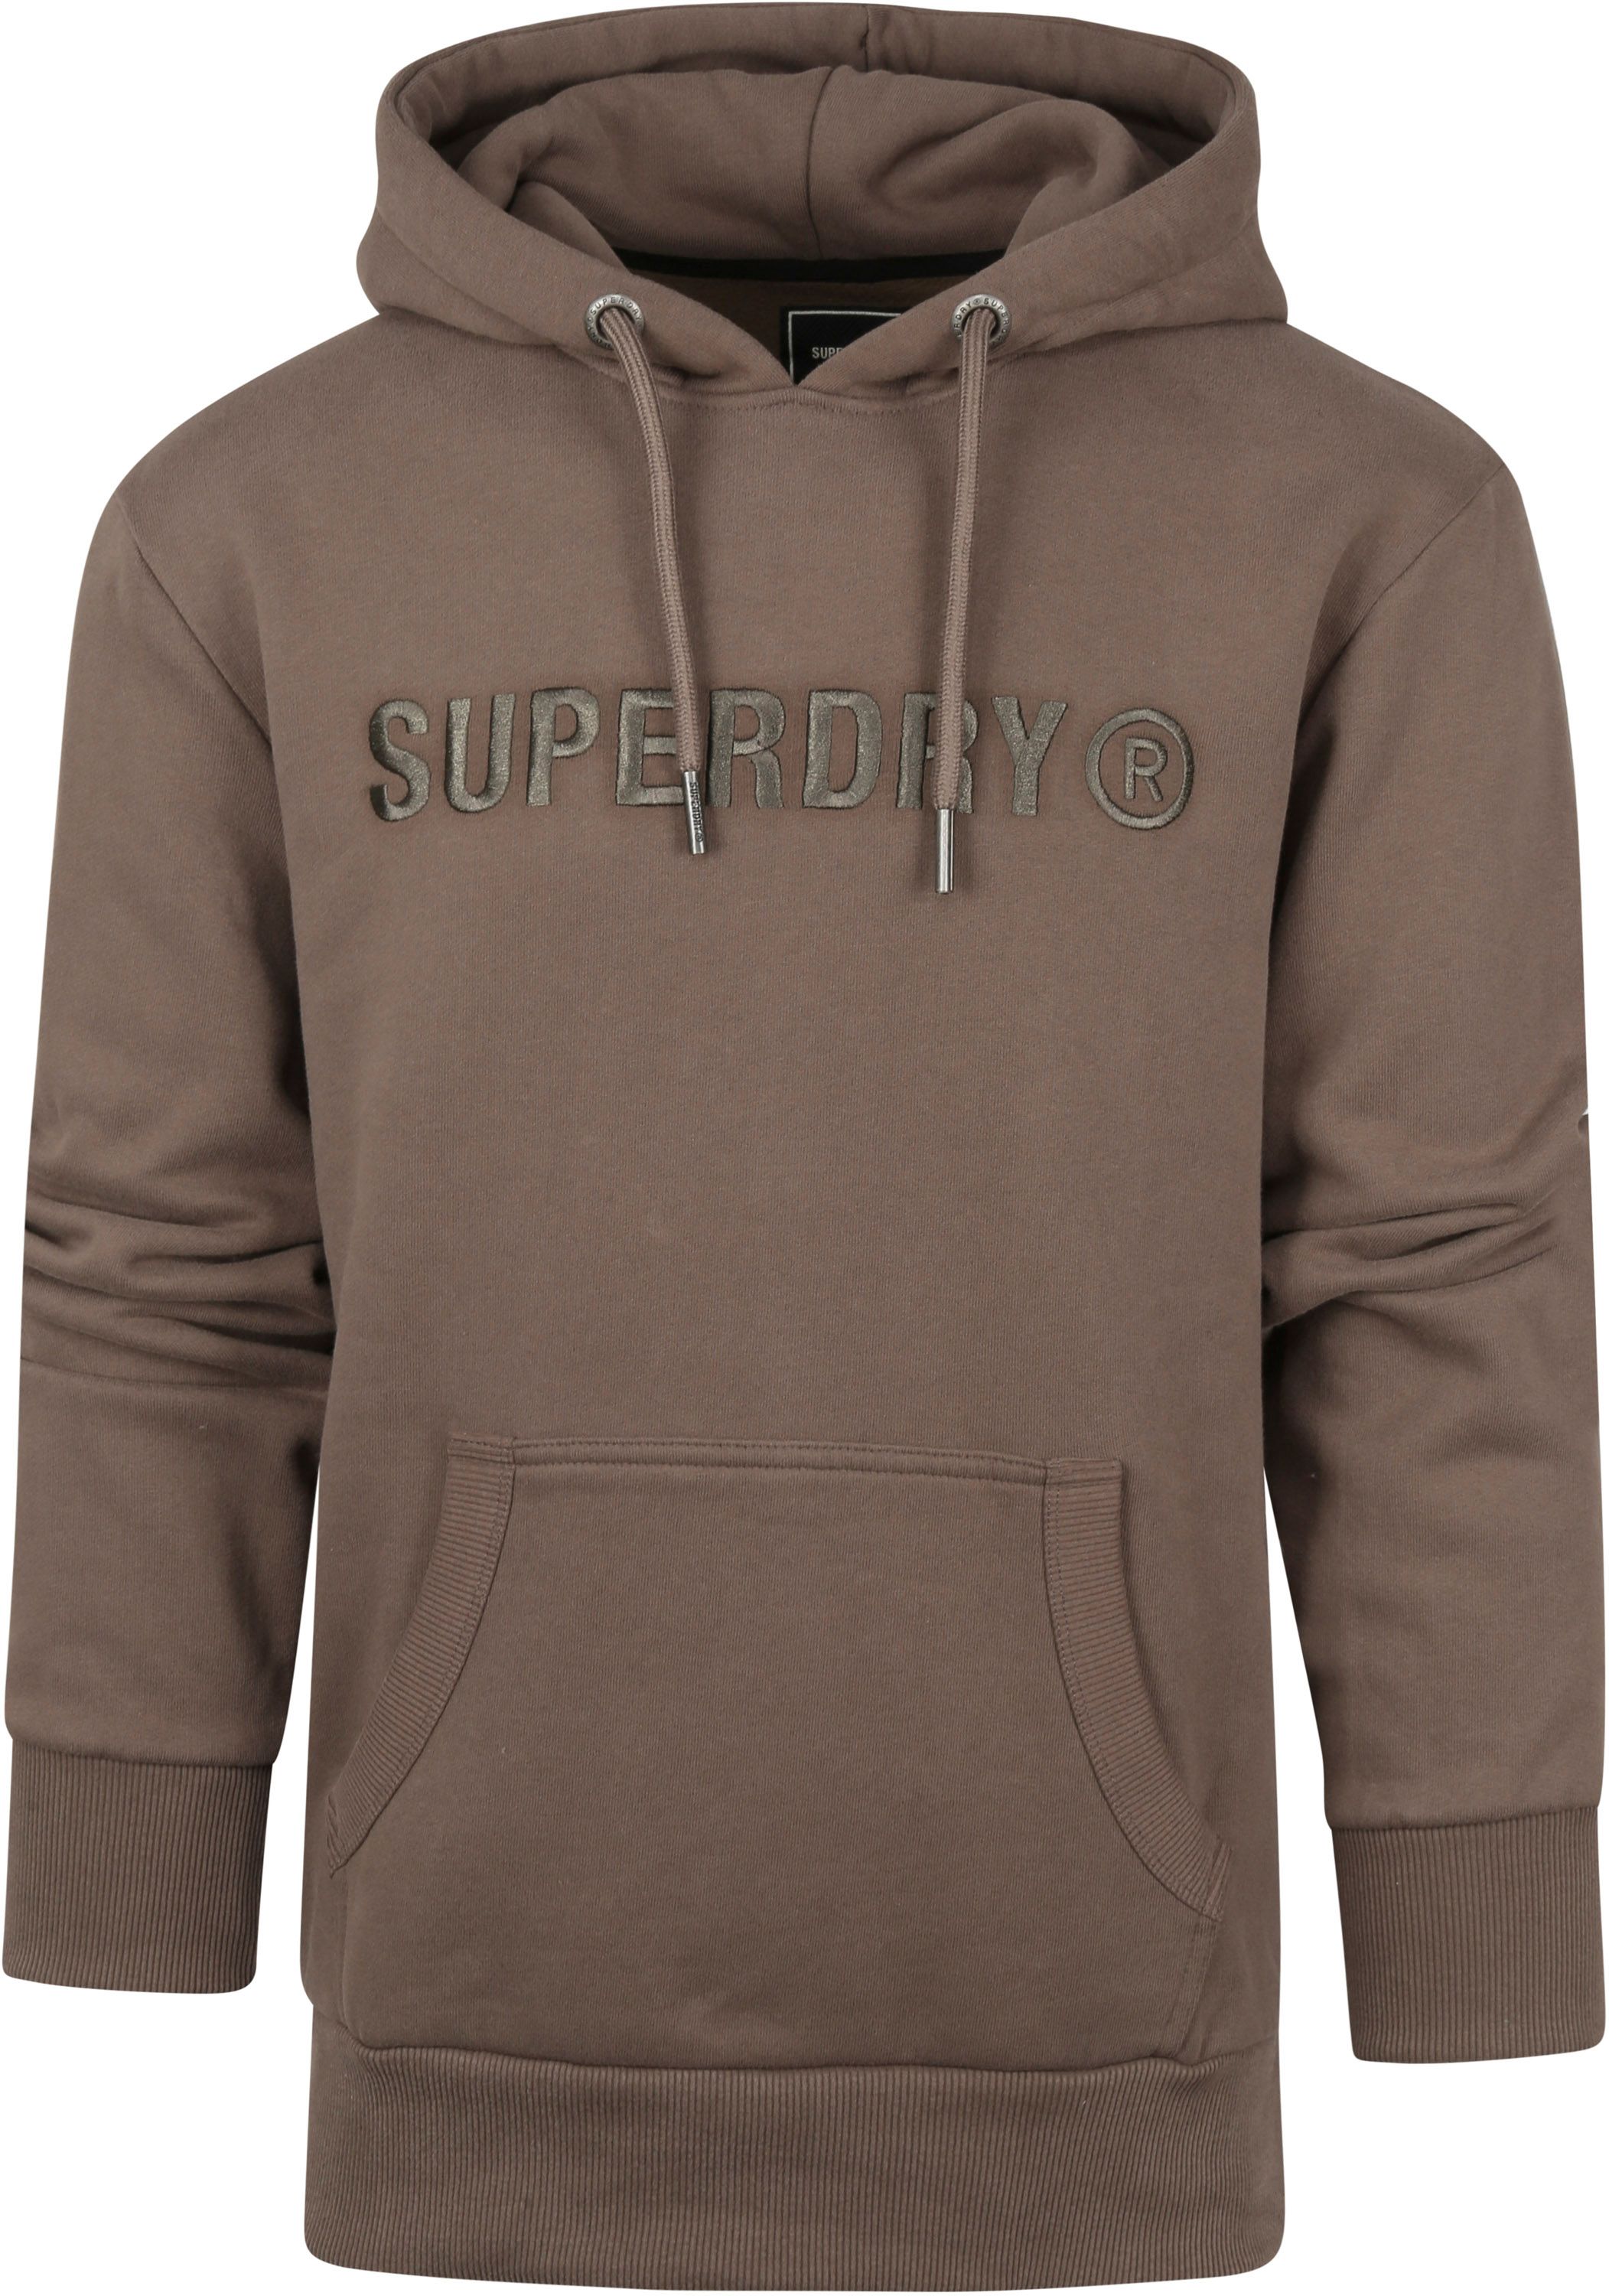 Superdry Hoodie Logo Khaki size L